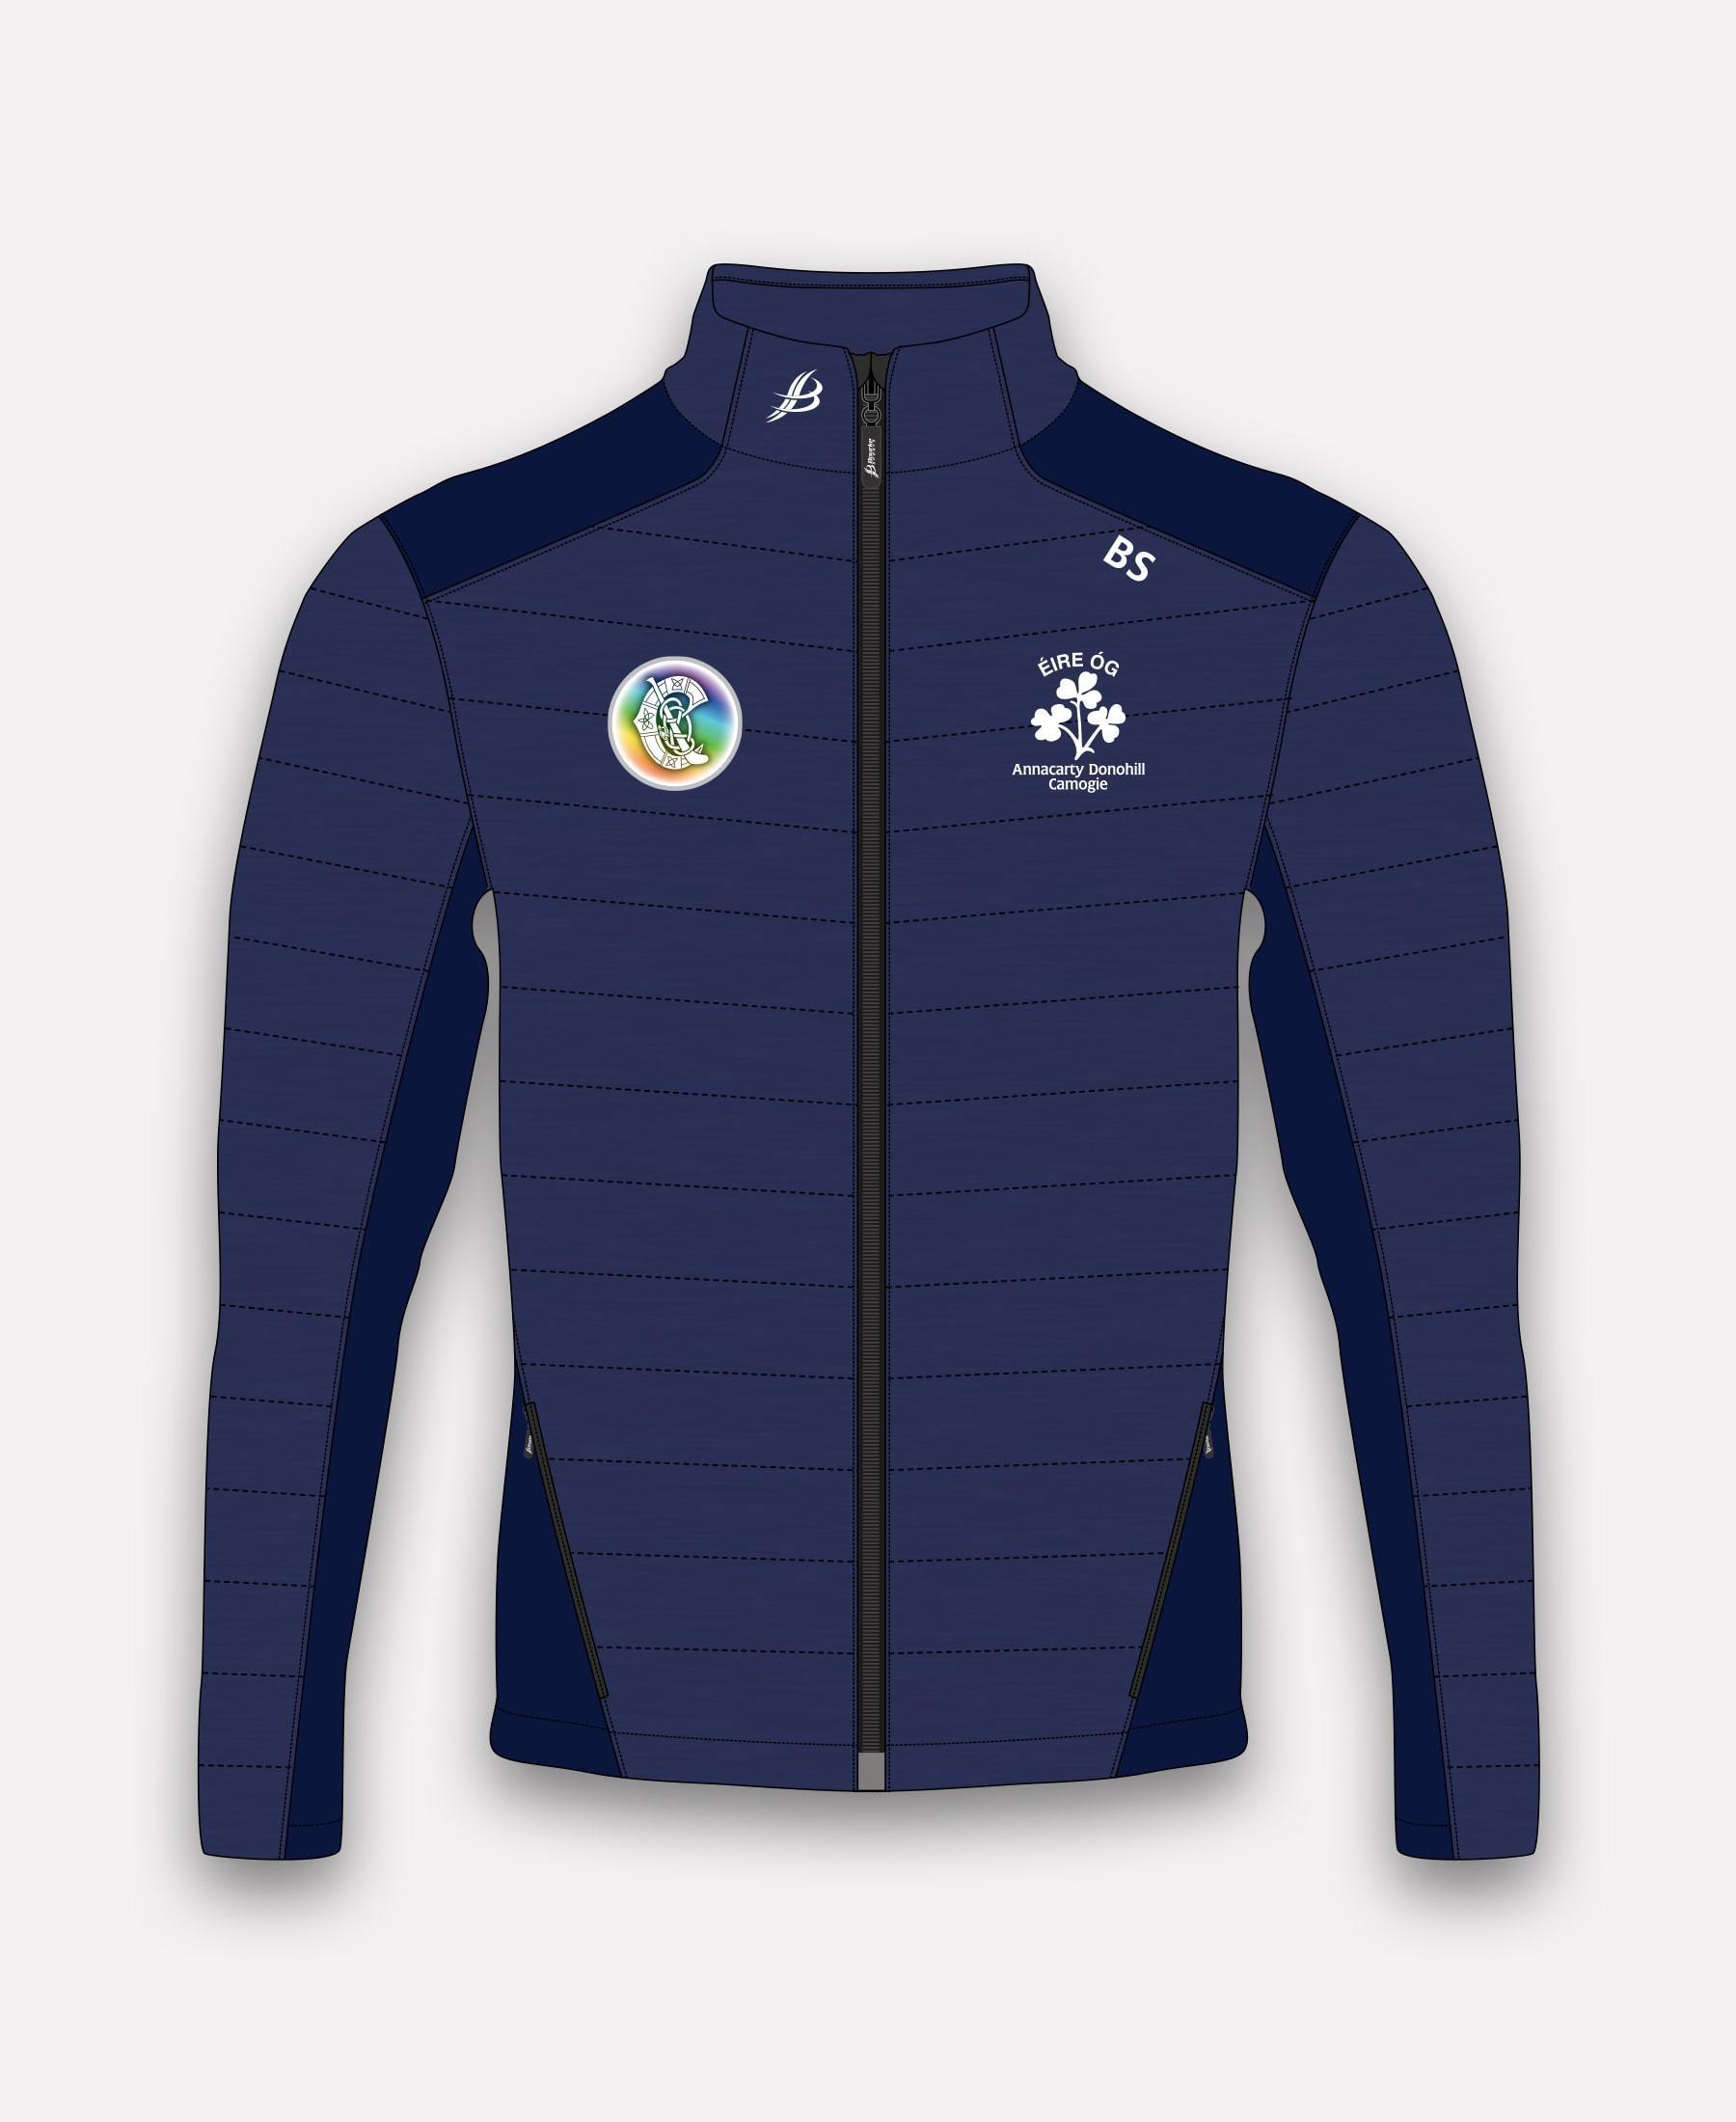 Eire Og Annacarty Donohill Camogie BUA Jacket - Bourke Sports Limited